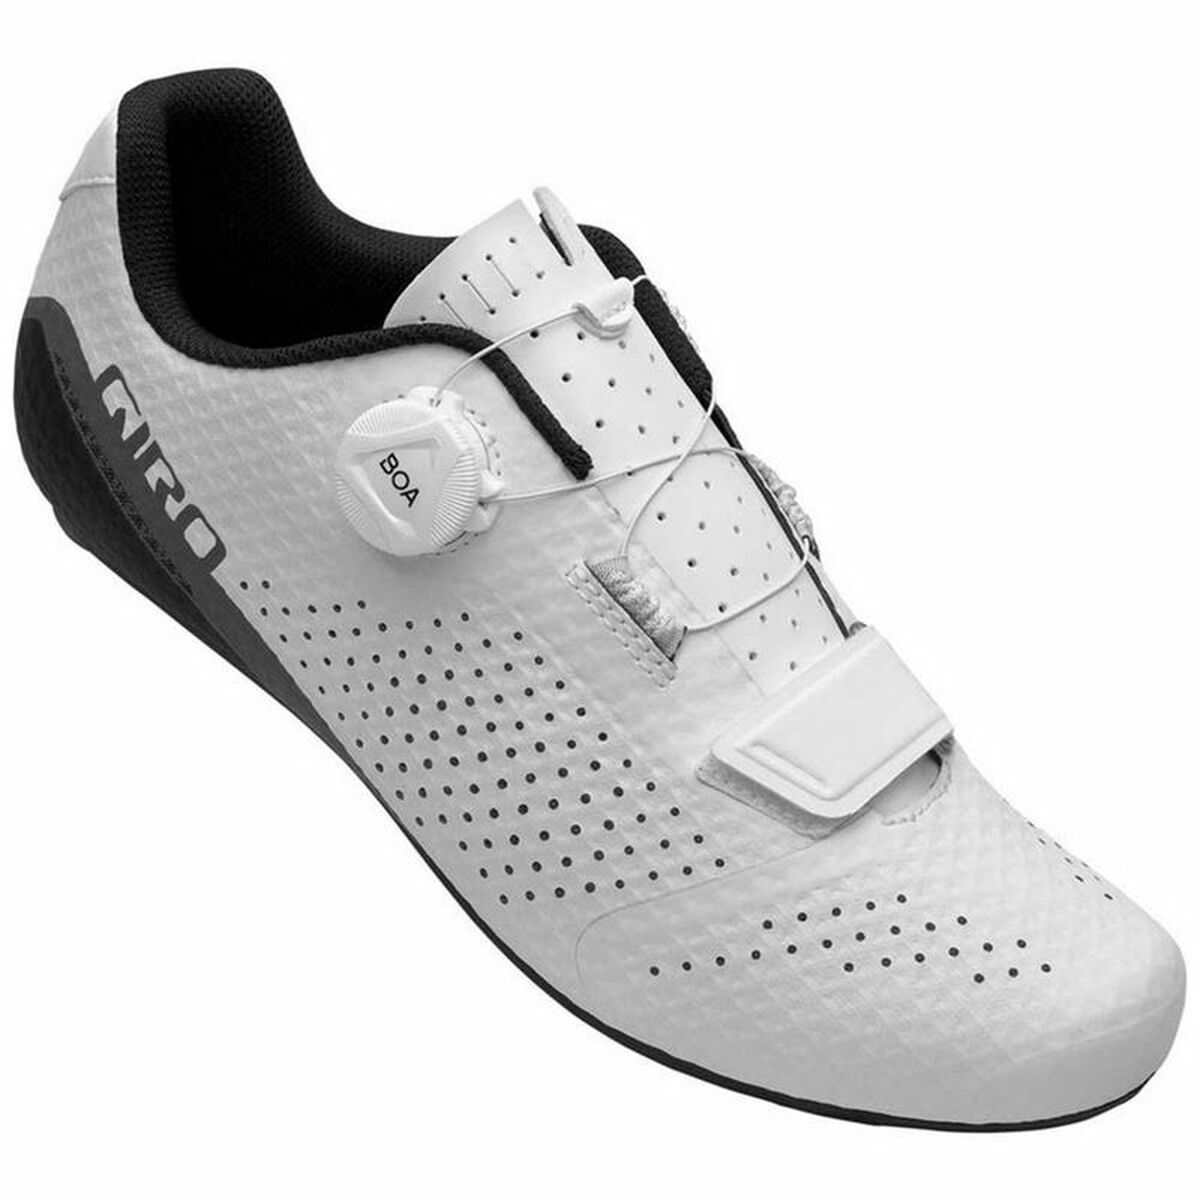 Radfahren Schuhe Giro Cadet  Weiß Bunt